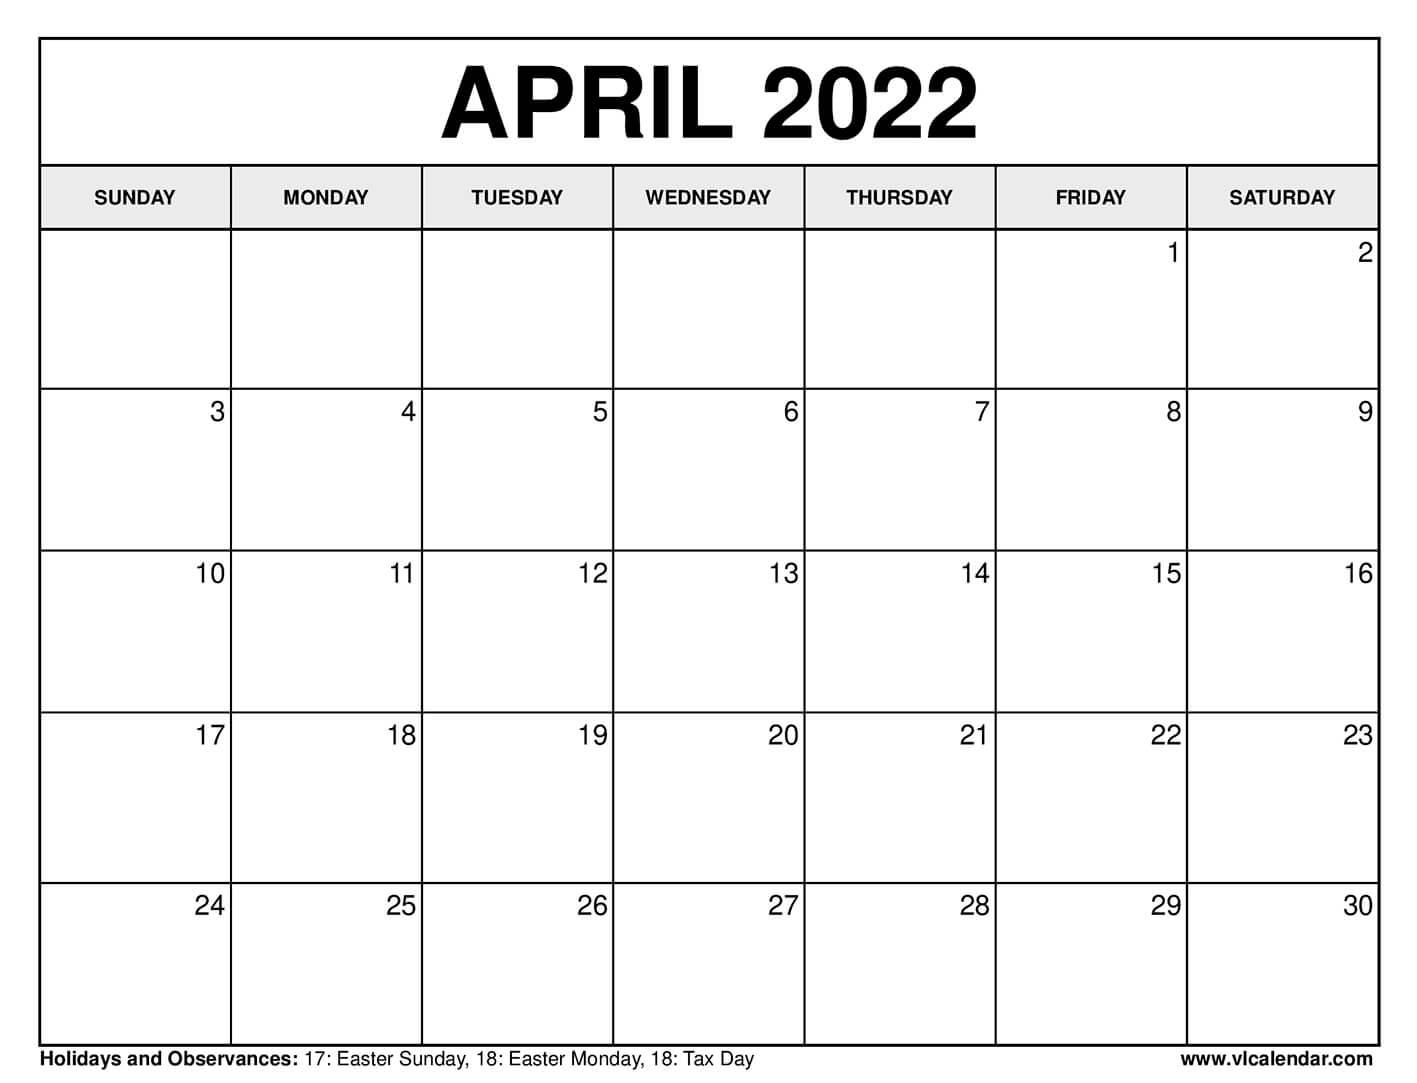 Print April 2022 Calendar Printable April 2022 Calendar Templates With Holidays - Vl Calendar